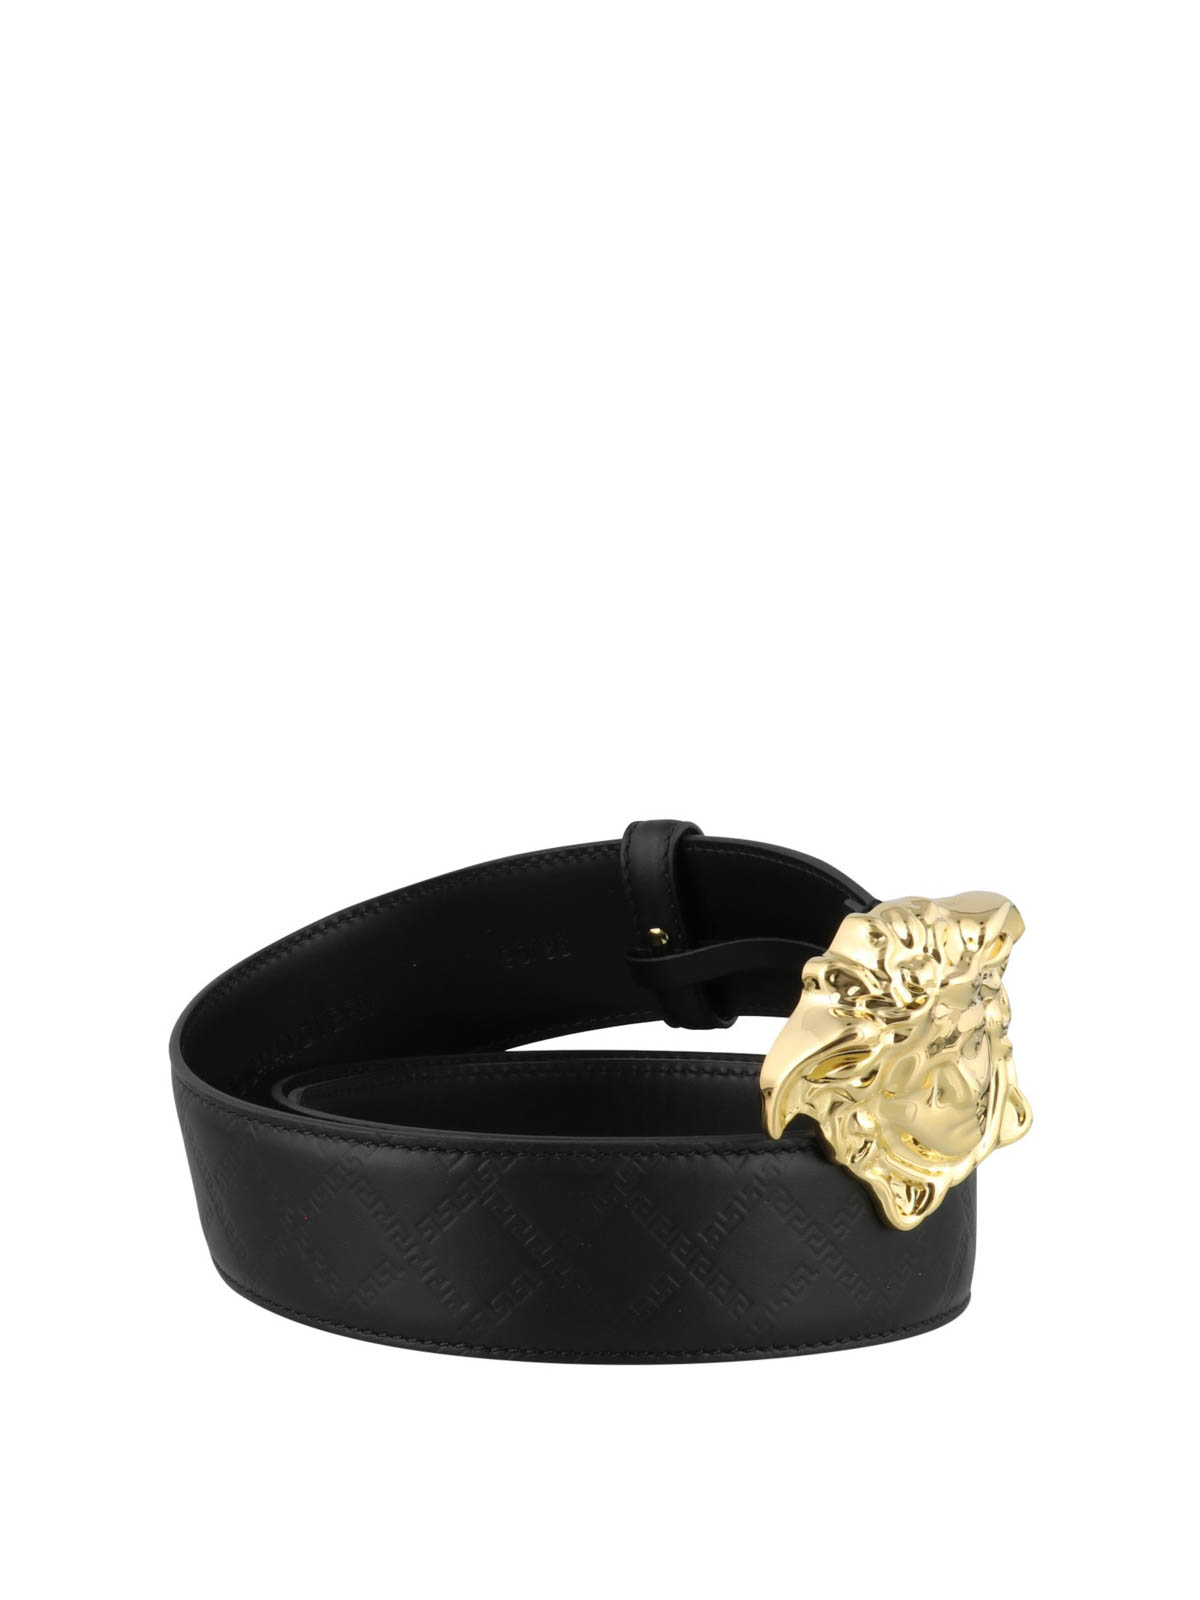 versace gold lion belt